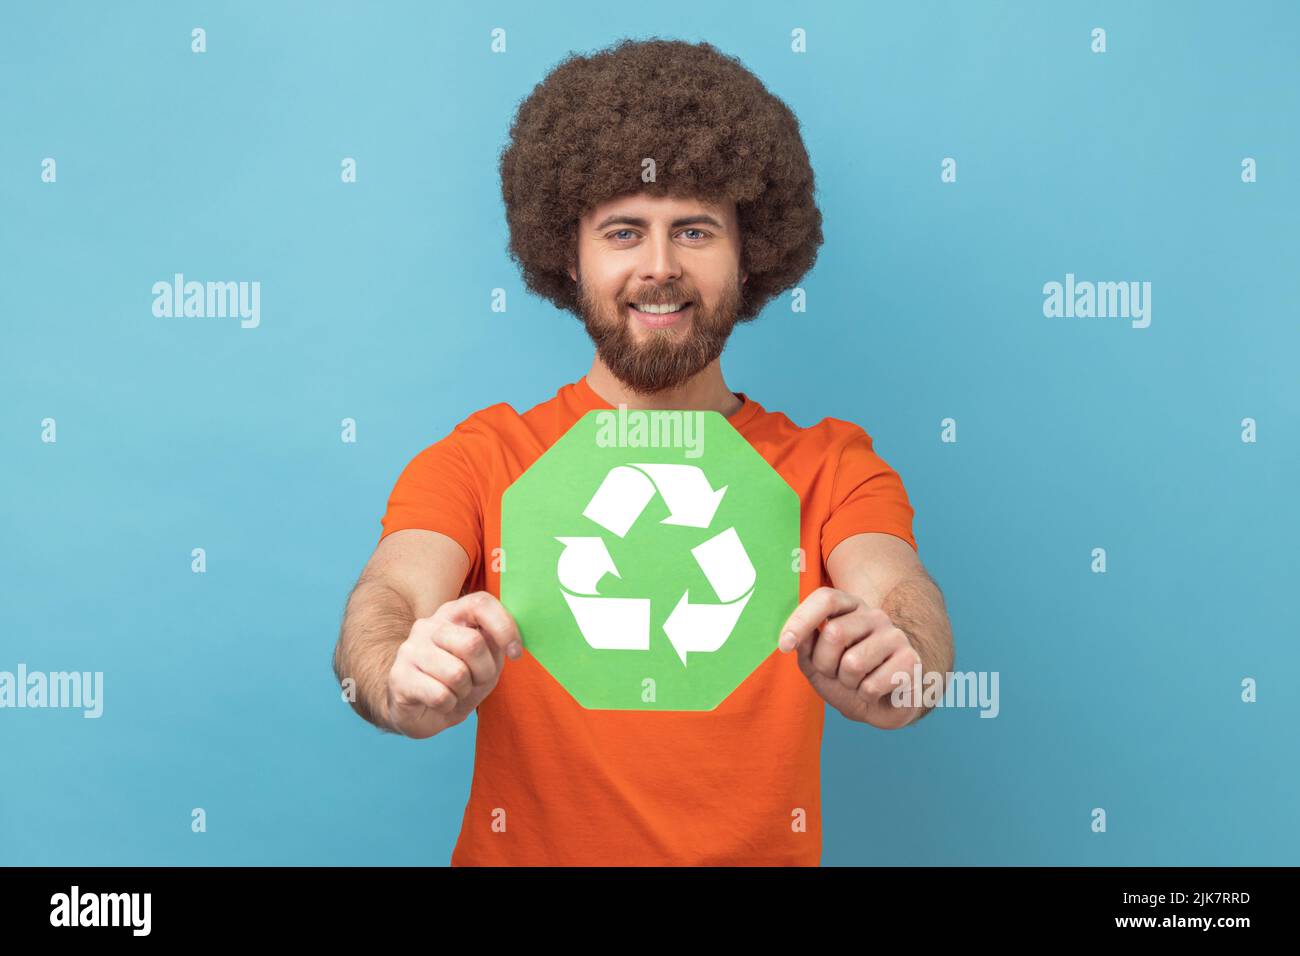 Porträt eines Mannes mit Afro-Frisur in orangefarbenem T-Shirt, der das Abfallrecycling-Symbol in der Hand hält und sich um Ökologie und Umweltverschmutzung sorgt. Innenaufnahme des Studios isoliert auf blauem Hintergrund. Stockfoto